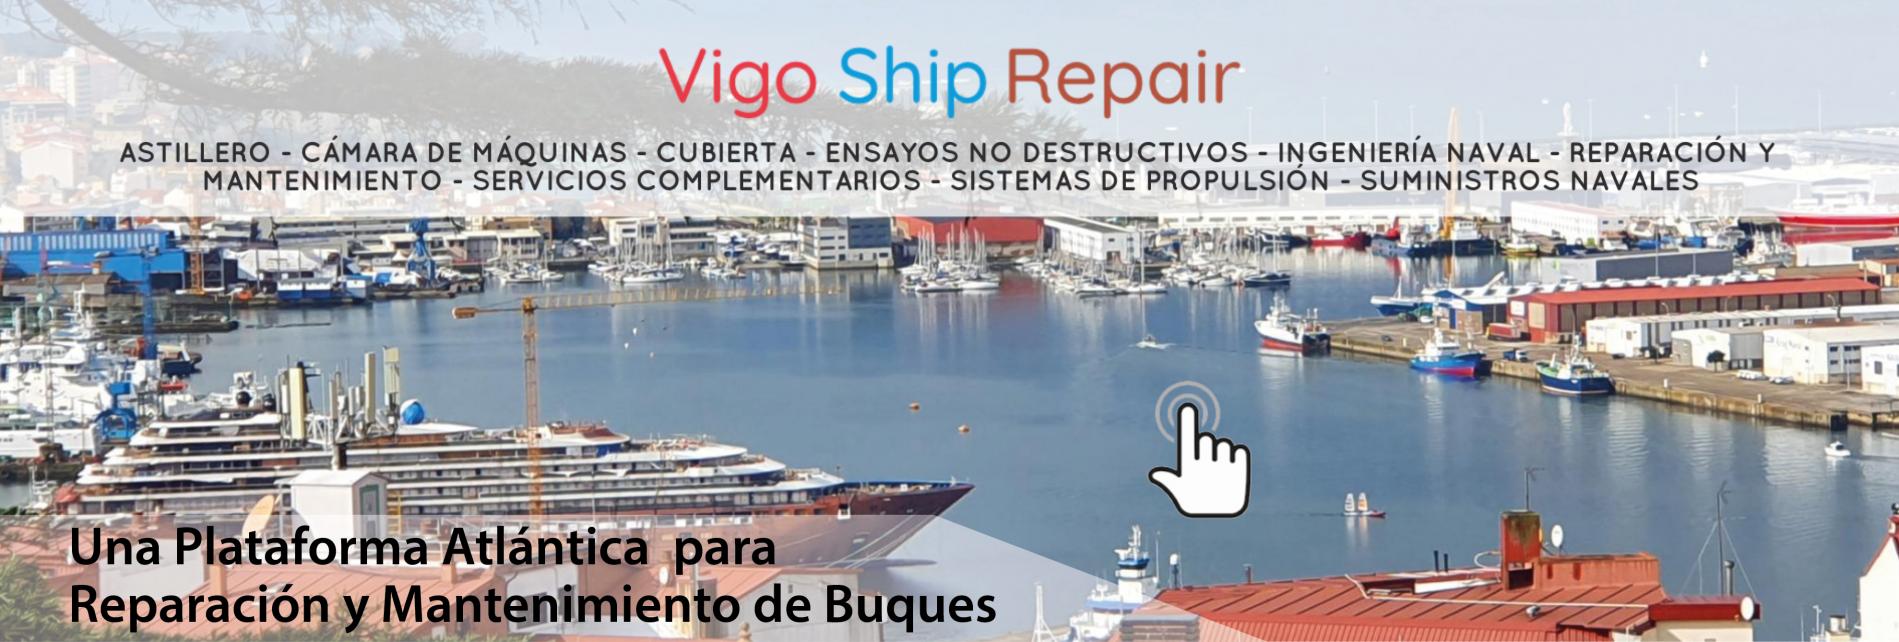 Imagen con numeros barcos atracados en el Puerto de Vigo